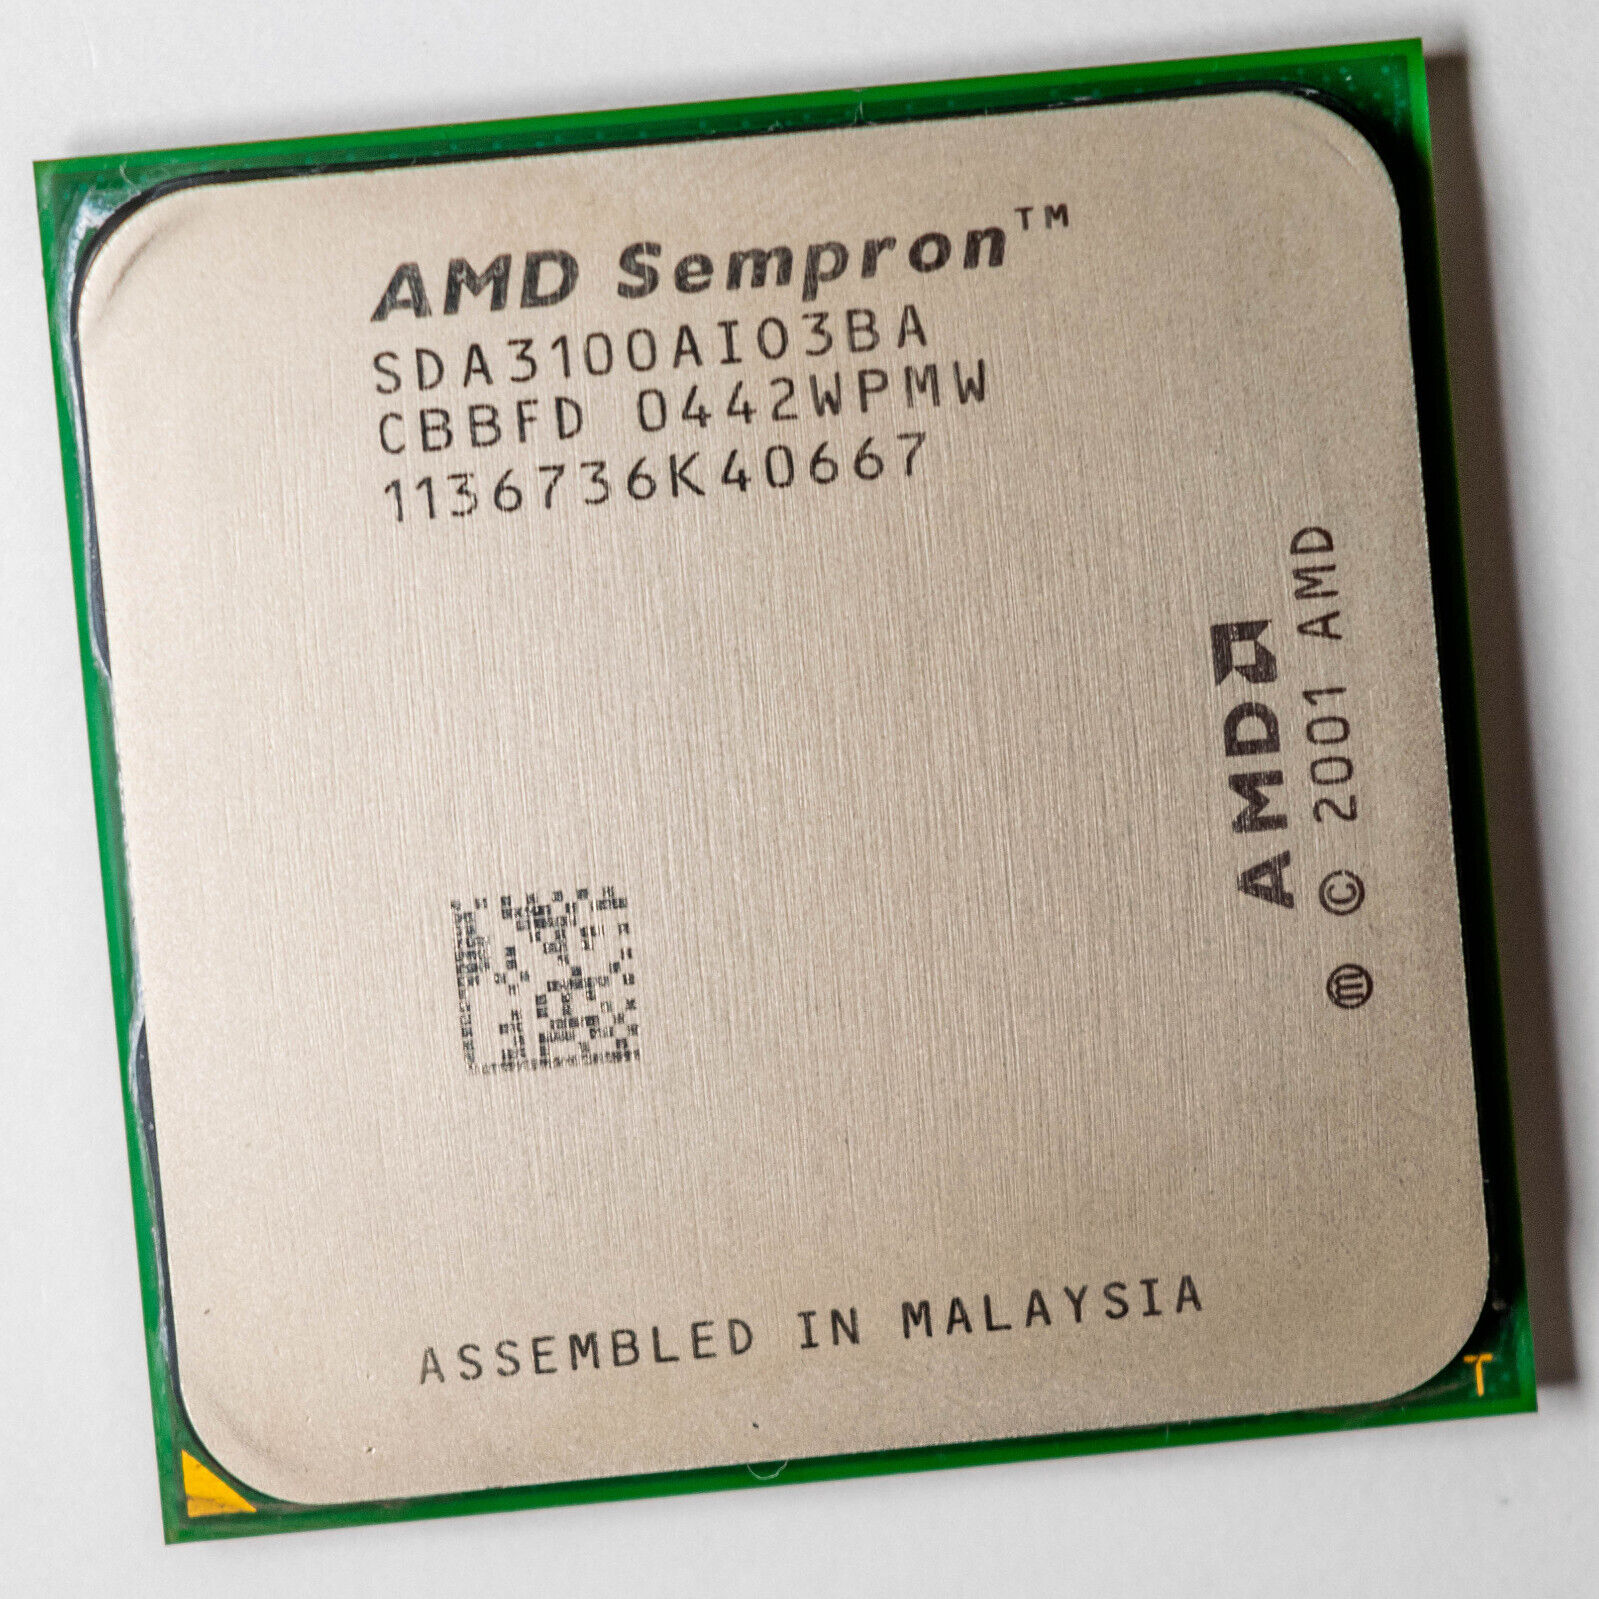 AMD Sempron 3100+ Socket 754 1.8GHz Processor 90nm Palermo 59W SDA3100AIO3BA